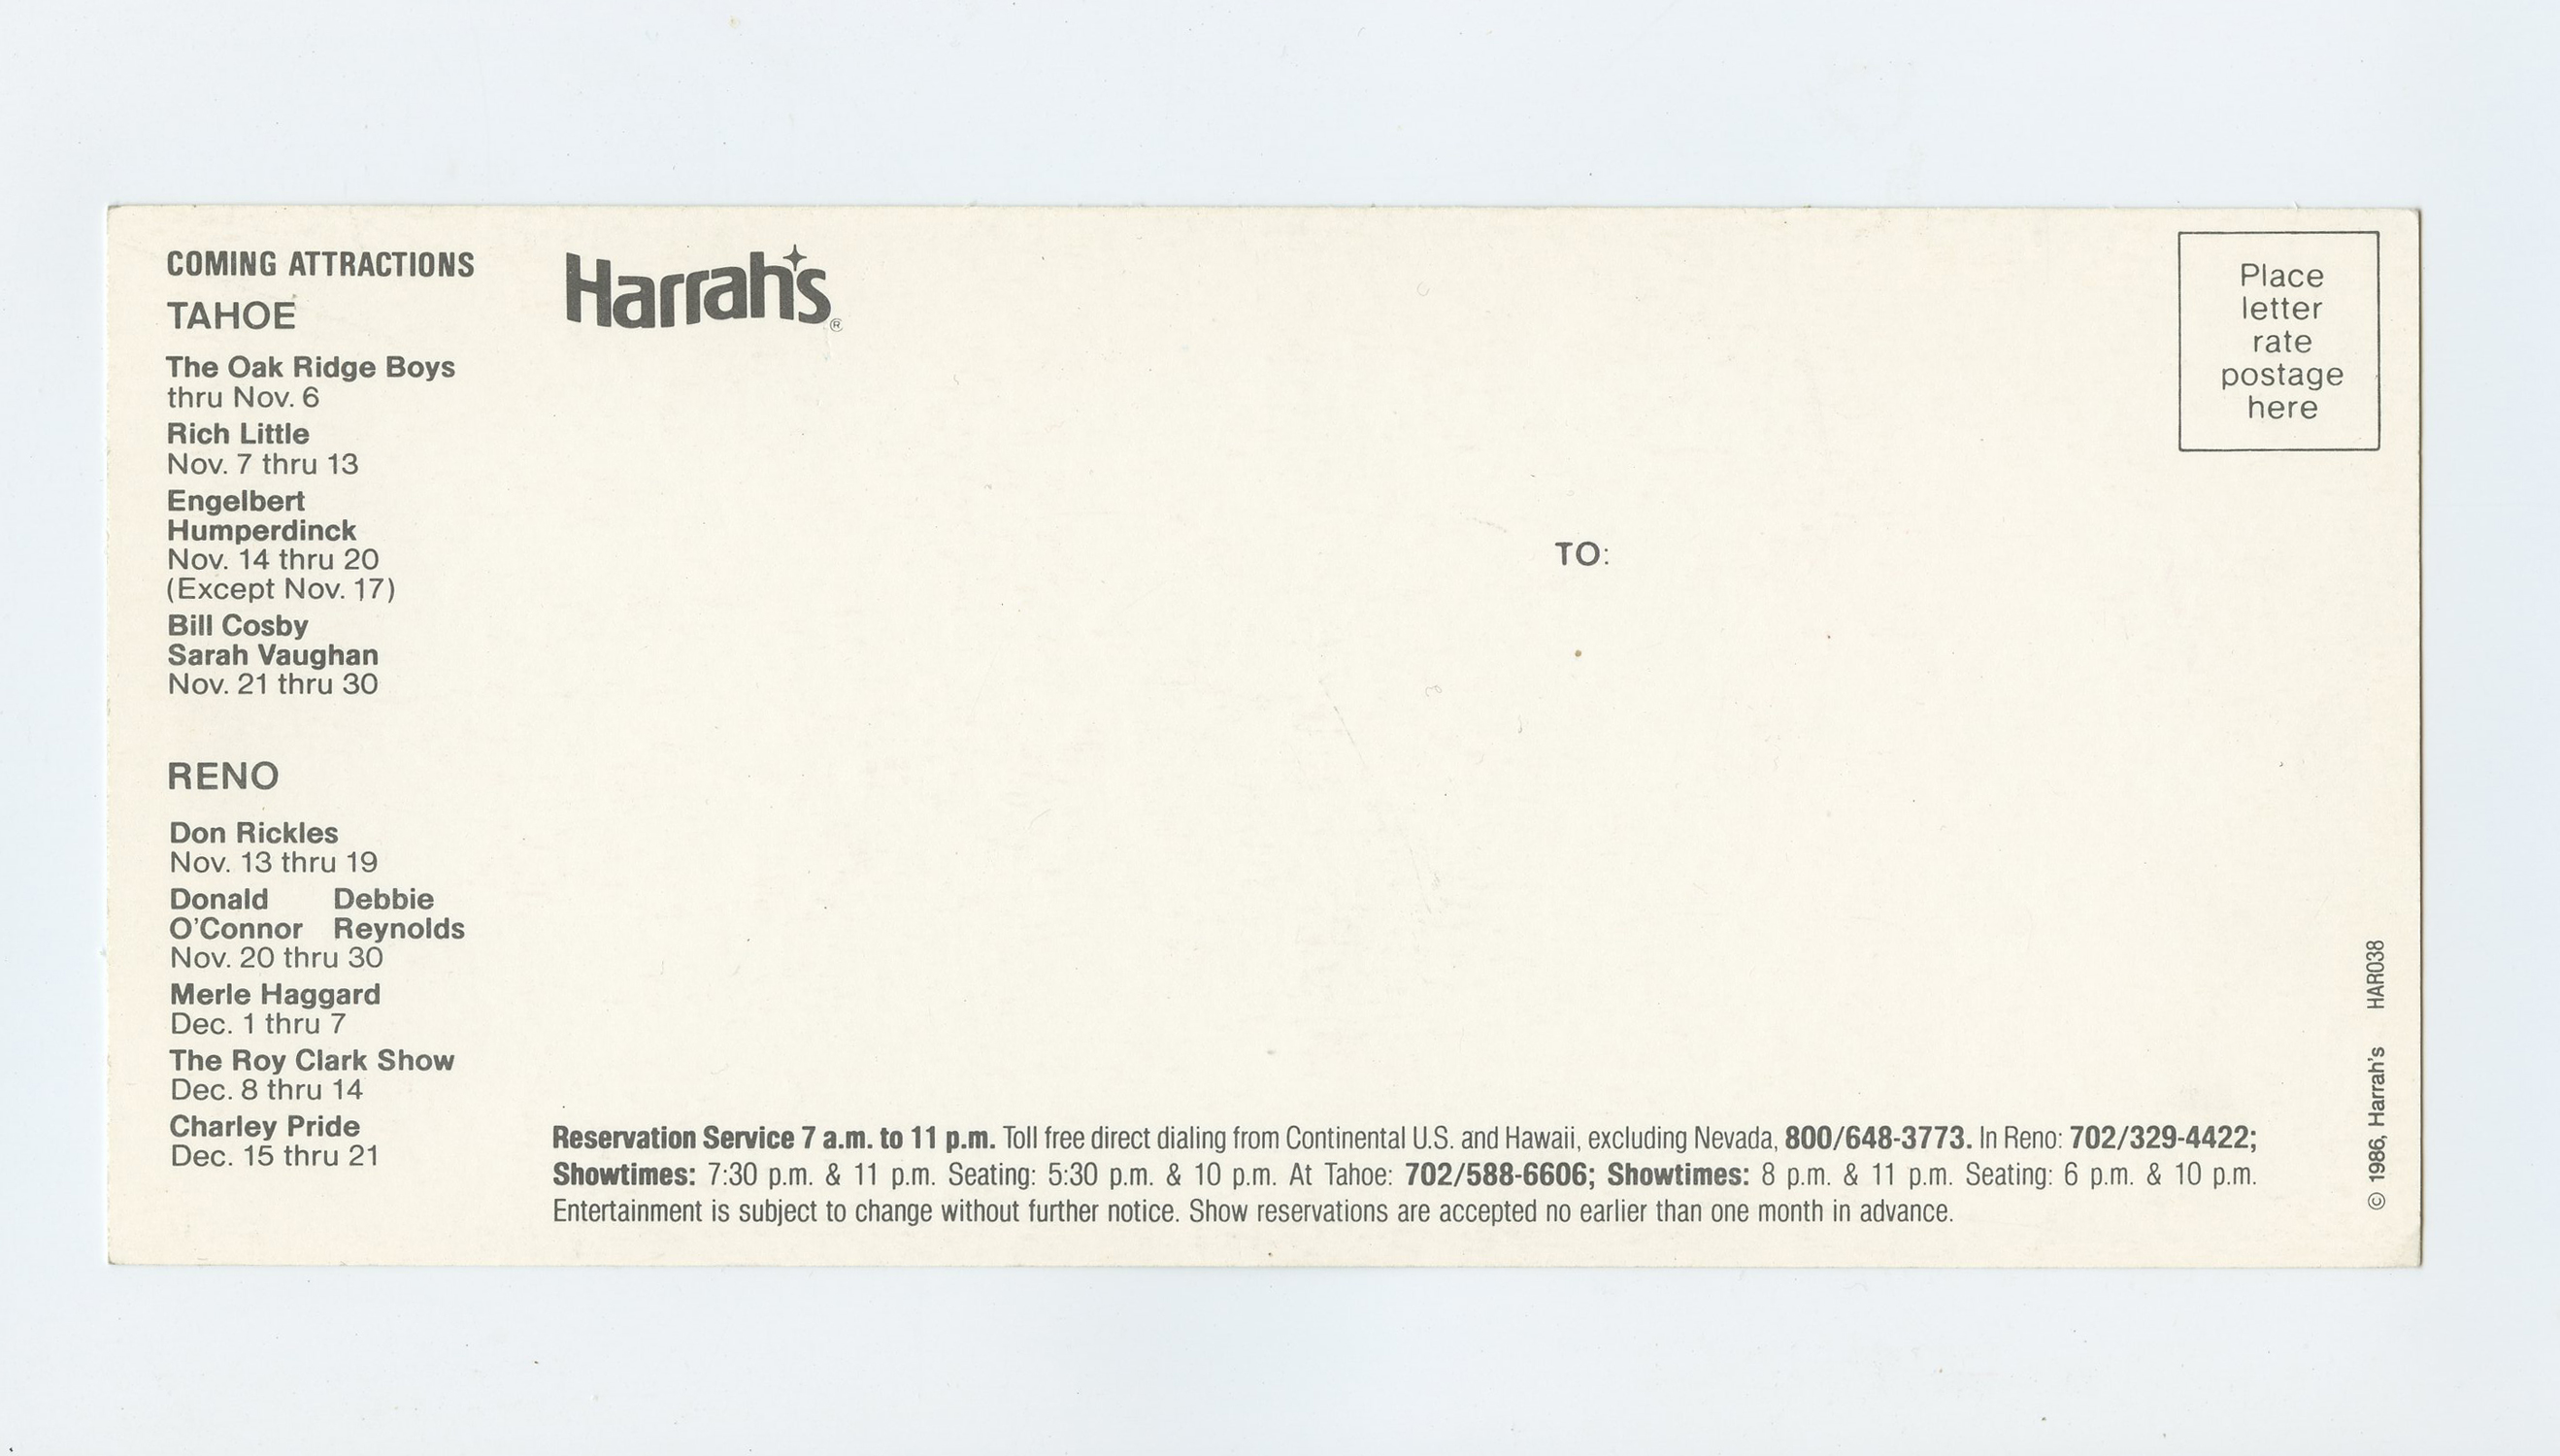 Mel Tillis Postcard 1986 Nov 12 Harrah's Reno